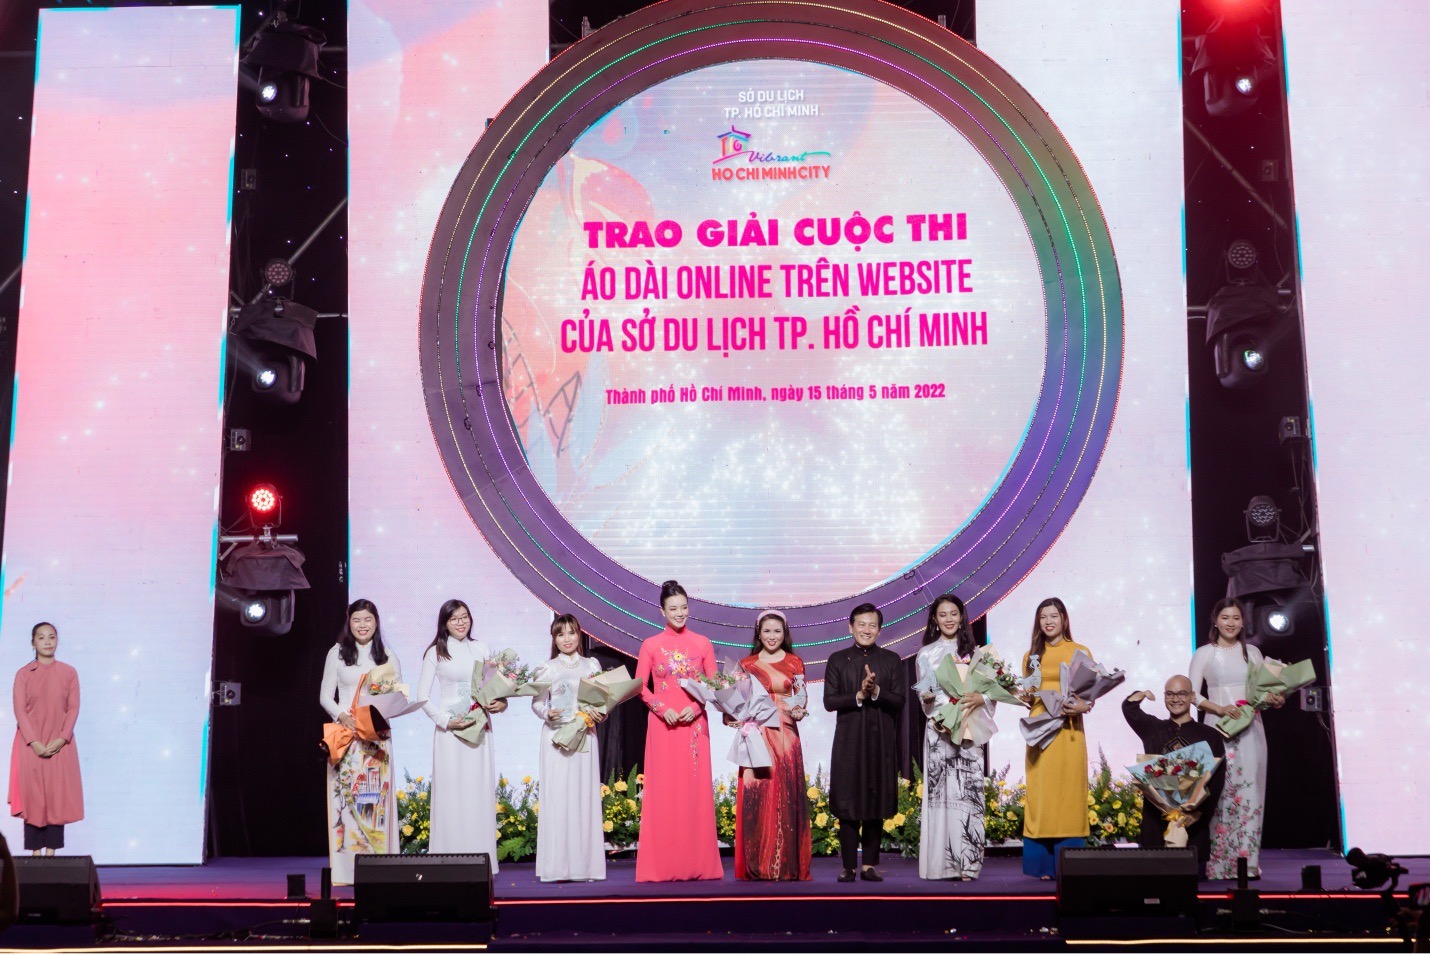 Tổng kết Lễ hội Áo dài Thành phố Hồ Chí Minh lần thứ 8 năm 2022 - ảnh 6